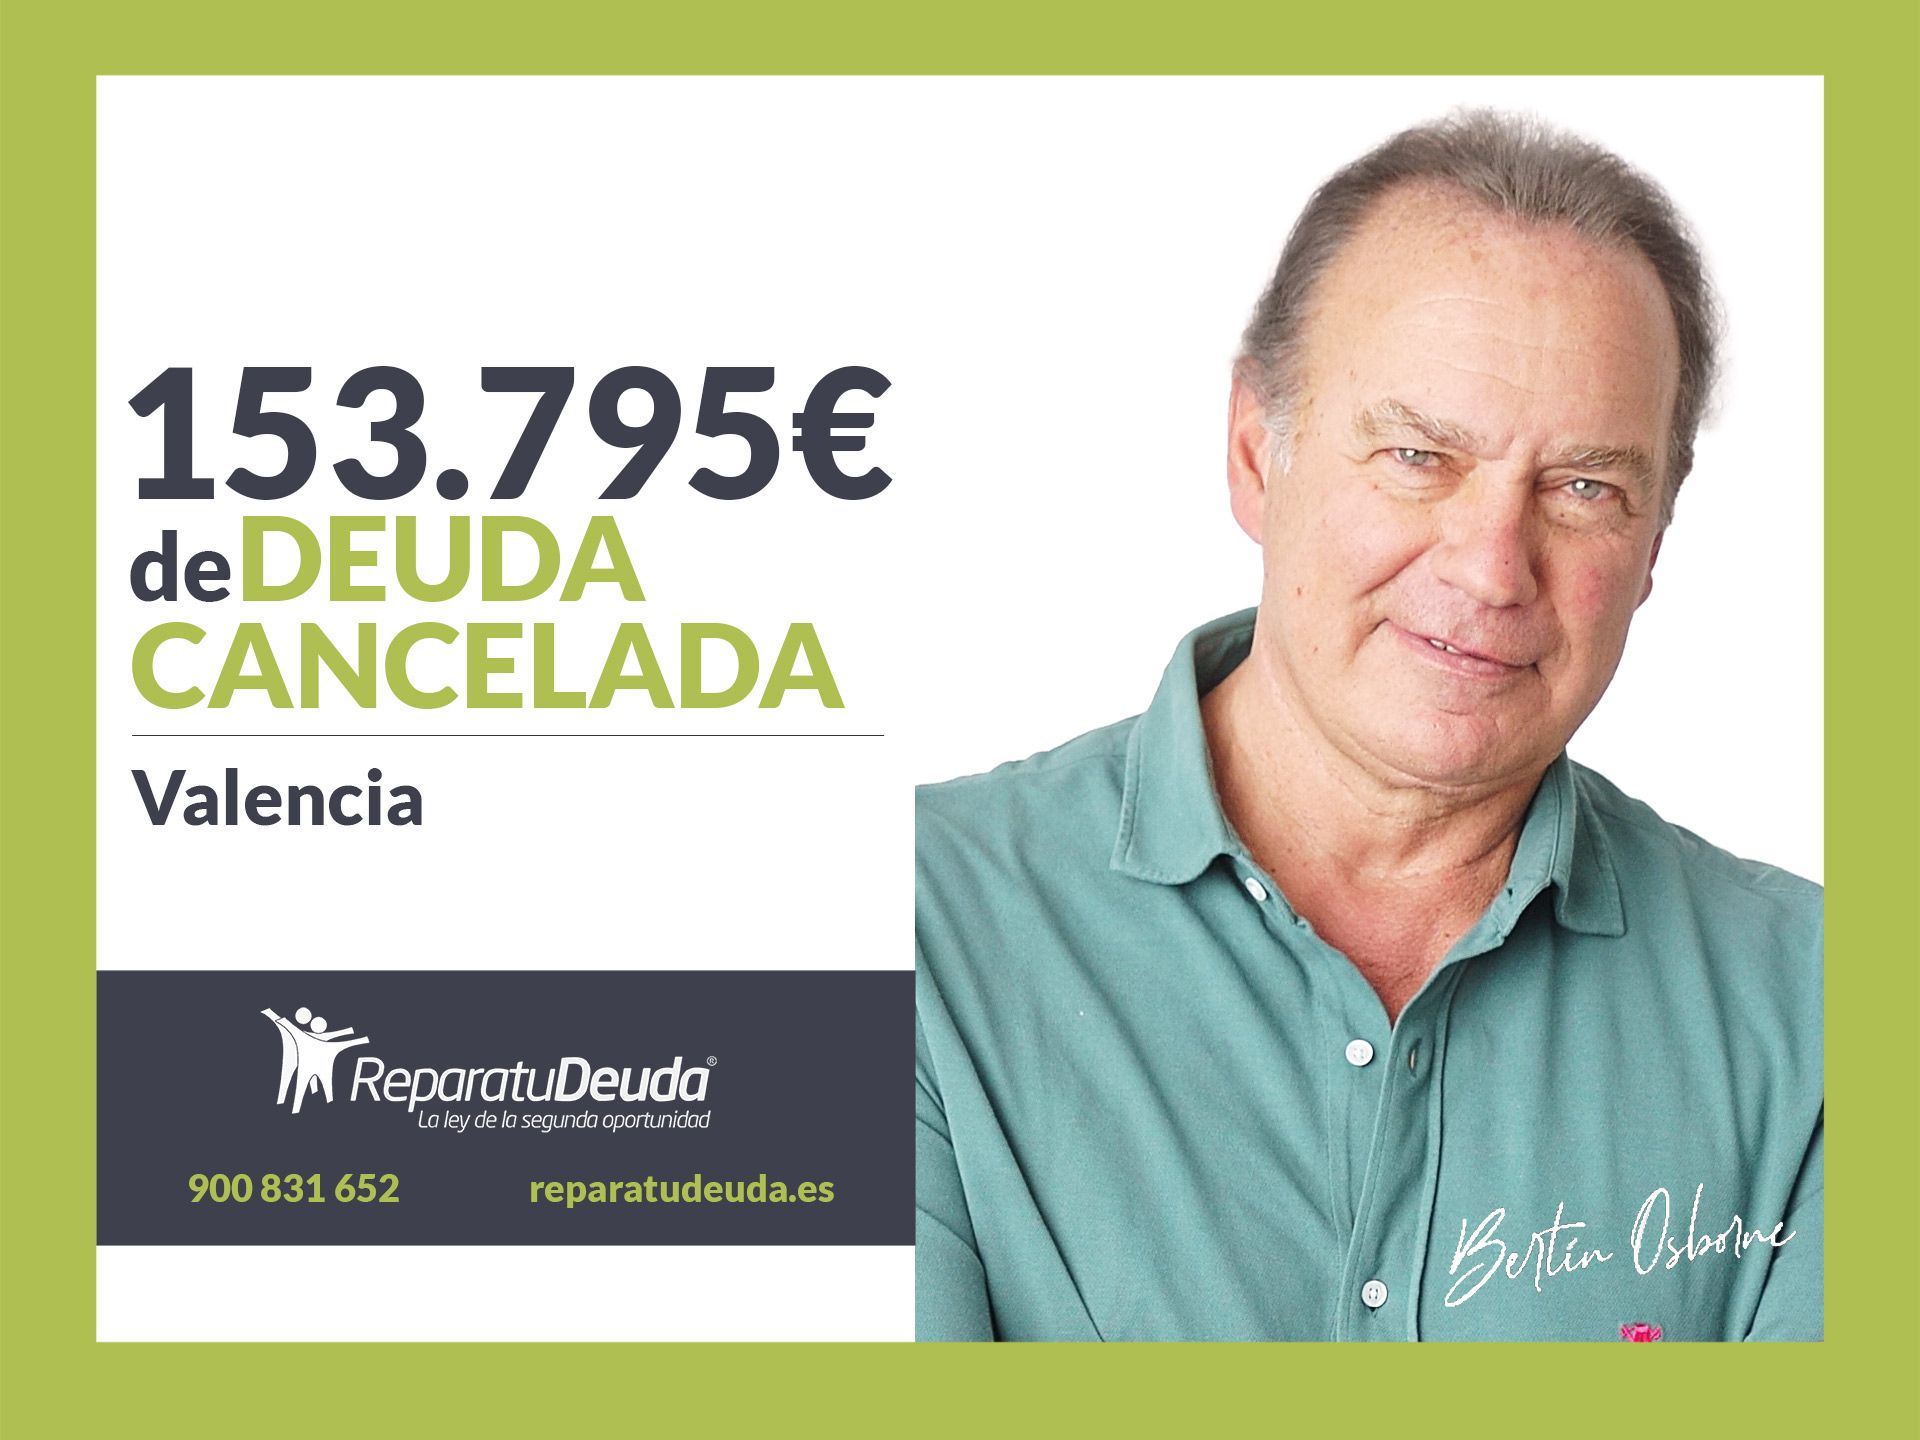 Repara tu Deuda Abogados cancela 153.795? en Valencia con la Ley de Segunda Oportunidad